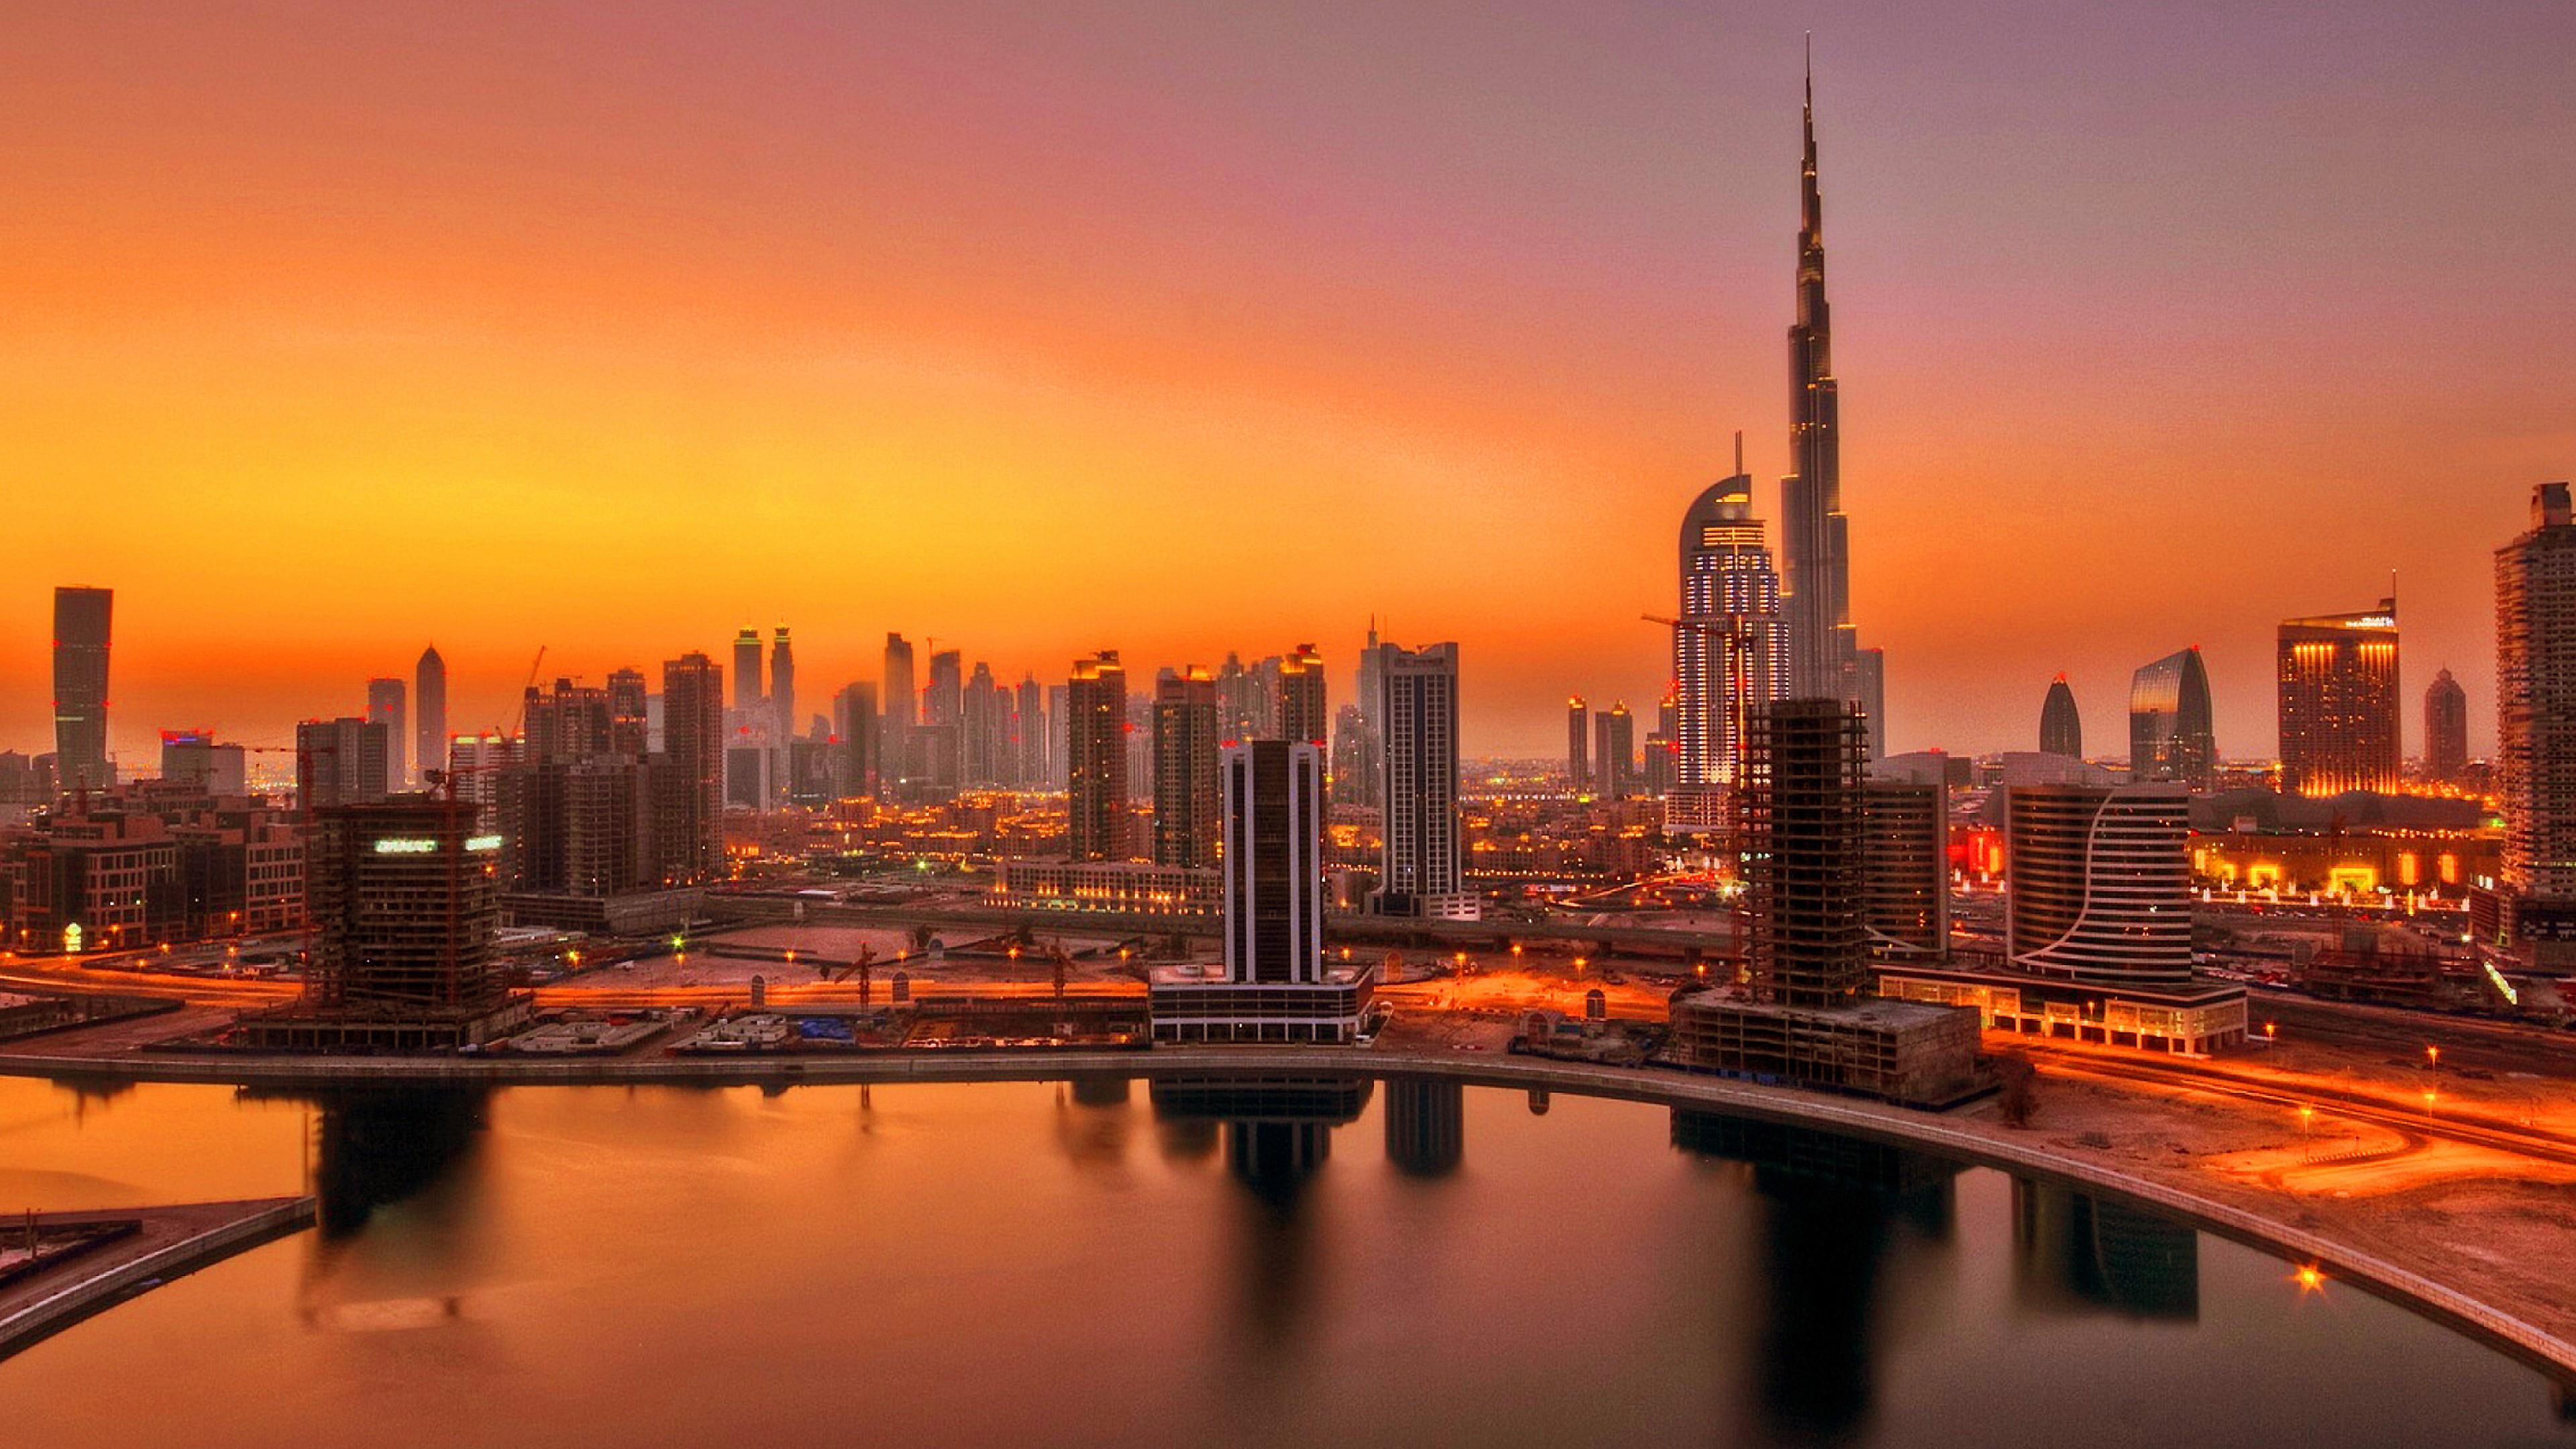 Dubai Sunset Wallpapers - Top Free Dubai Sunset Backgrounds